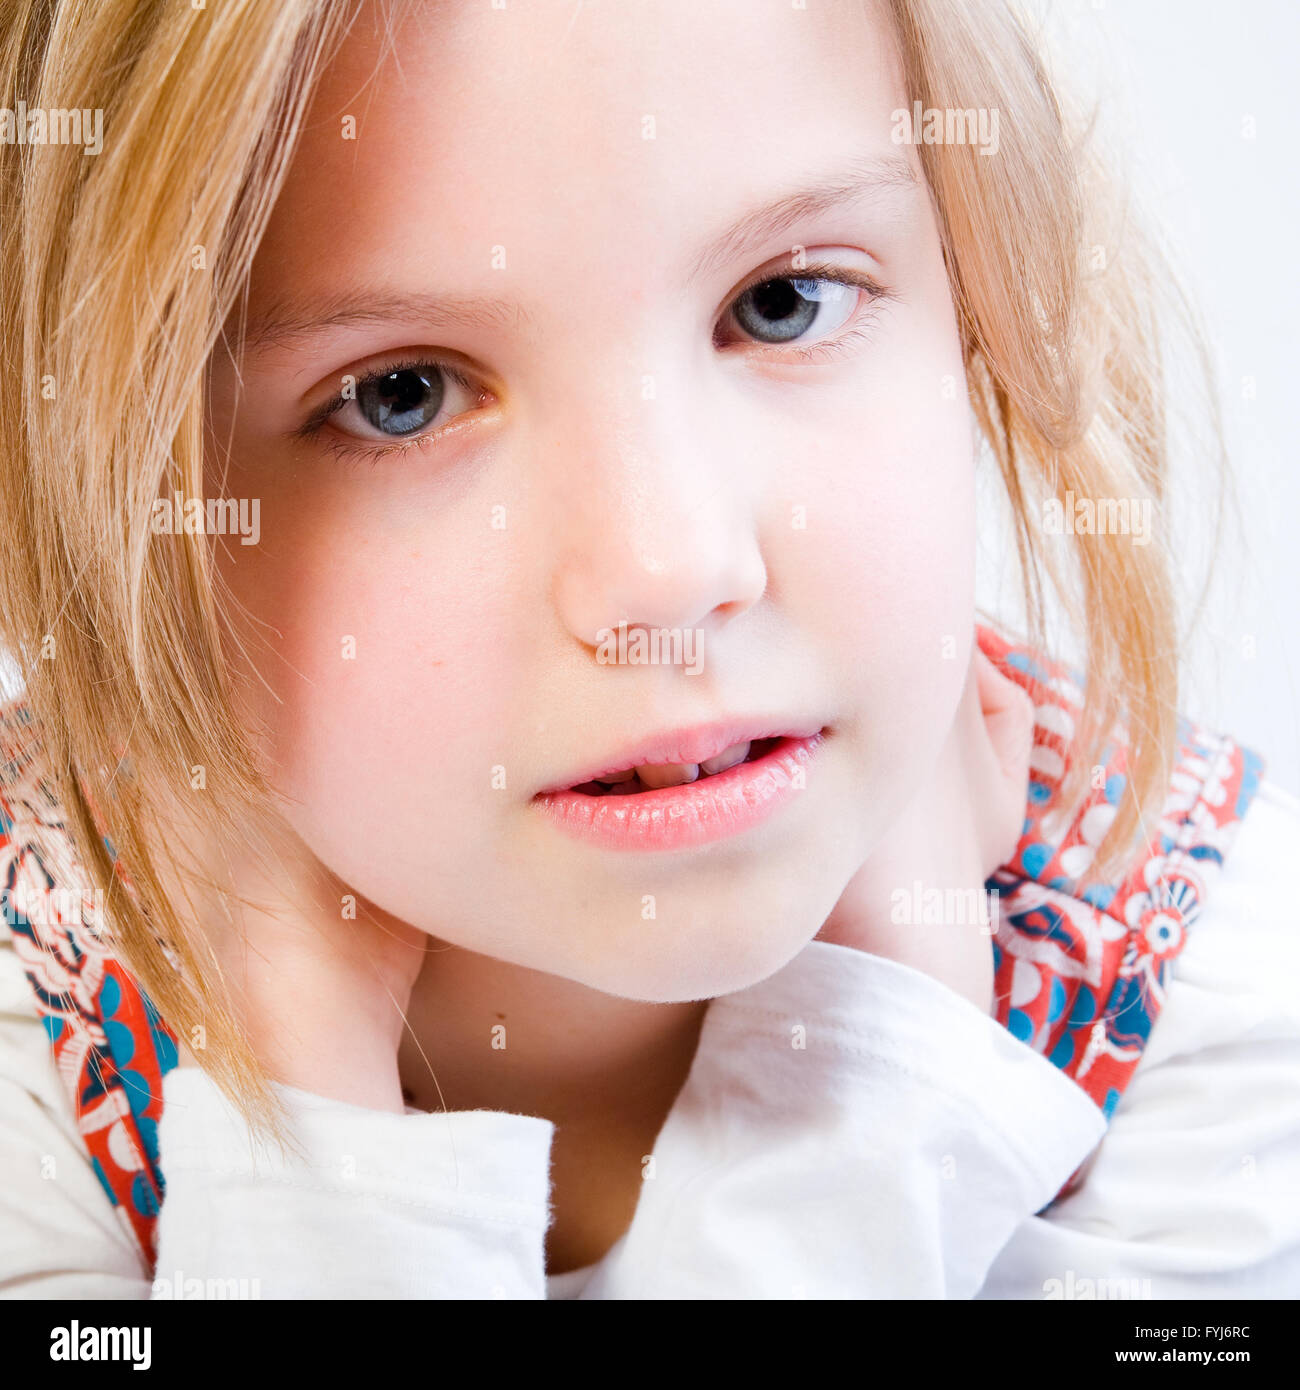 Porträt von einem blonden Kind hautnah Stockfoto